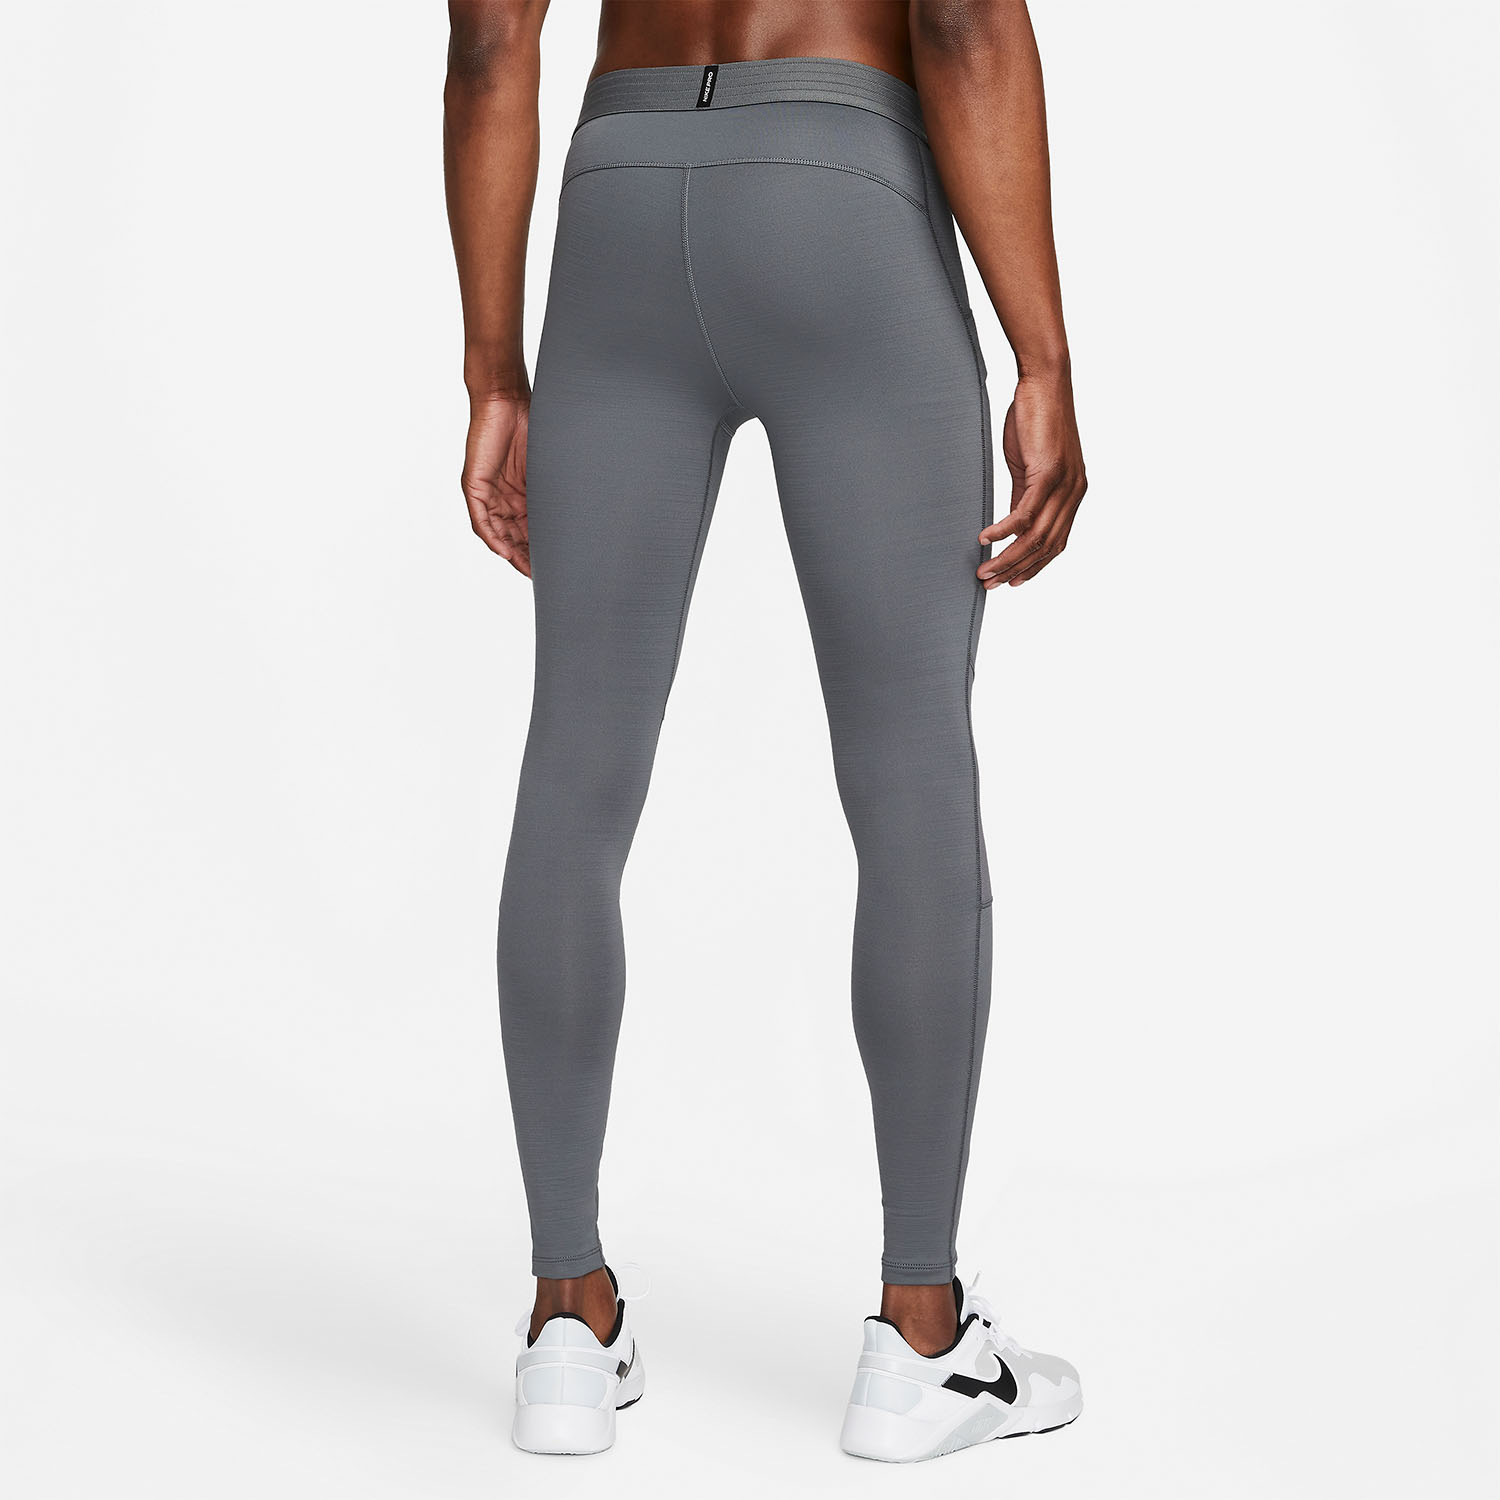 Nike Pro Warm Men's Running Long Tights - Iron Grey/Black